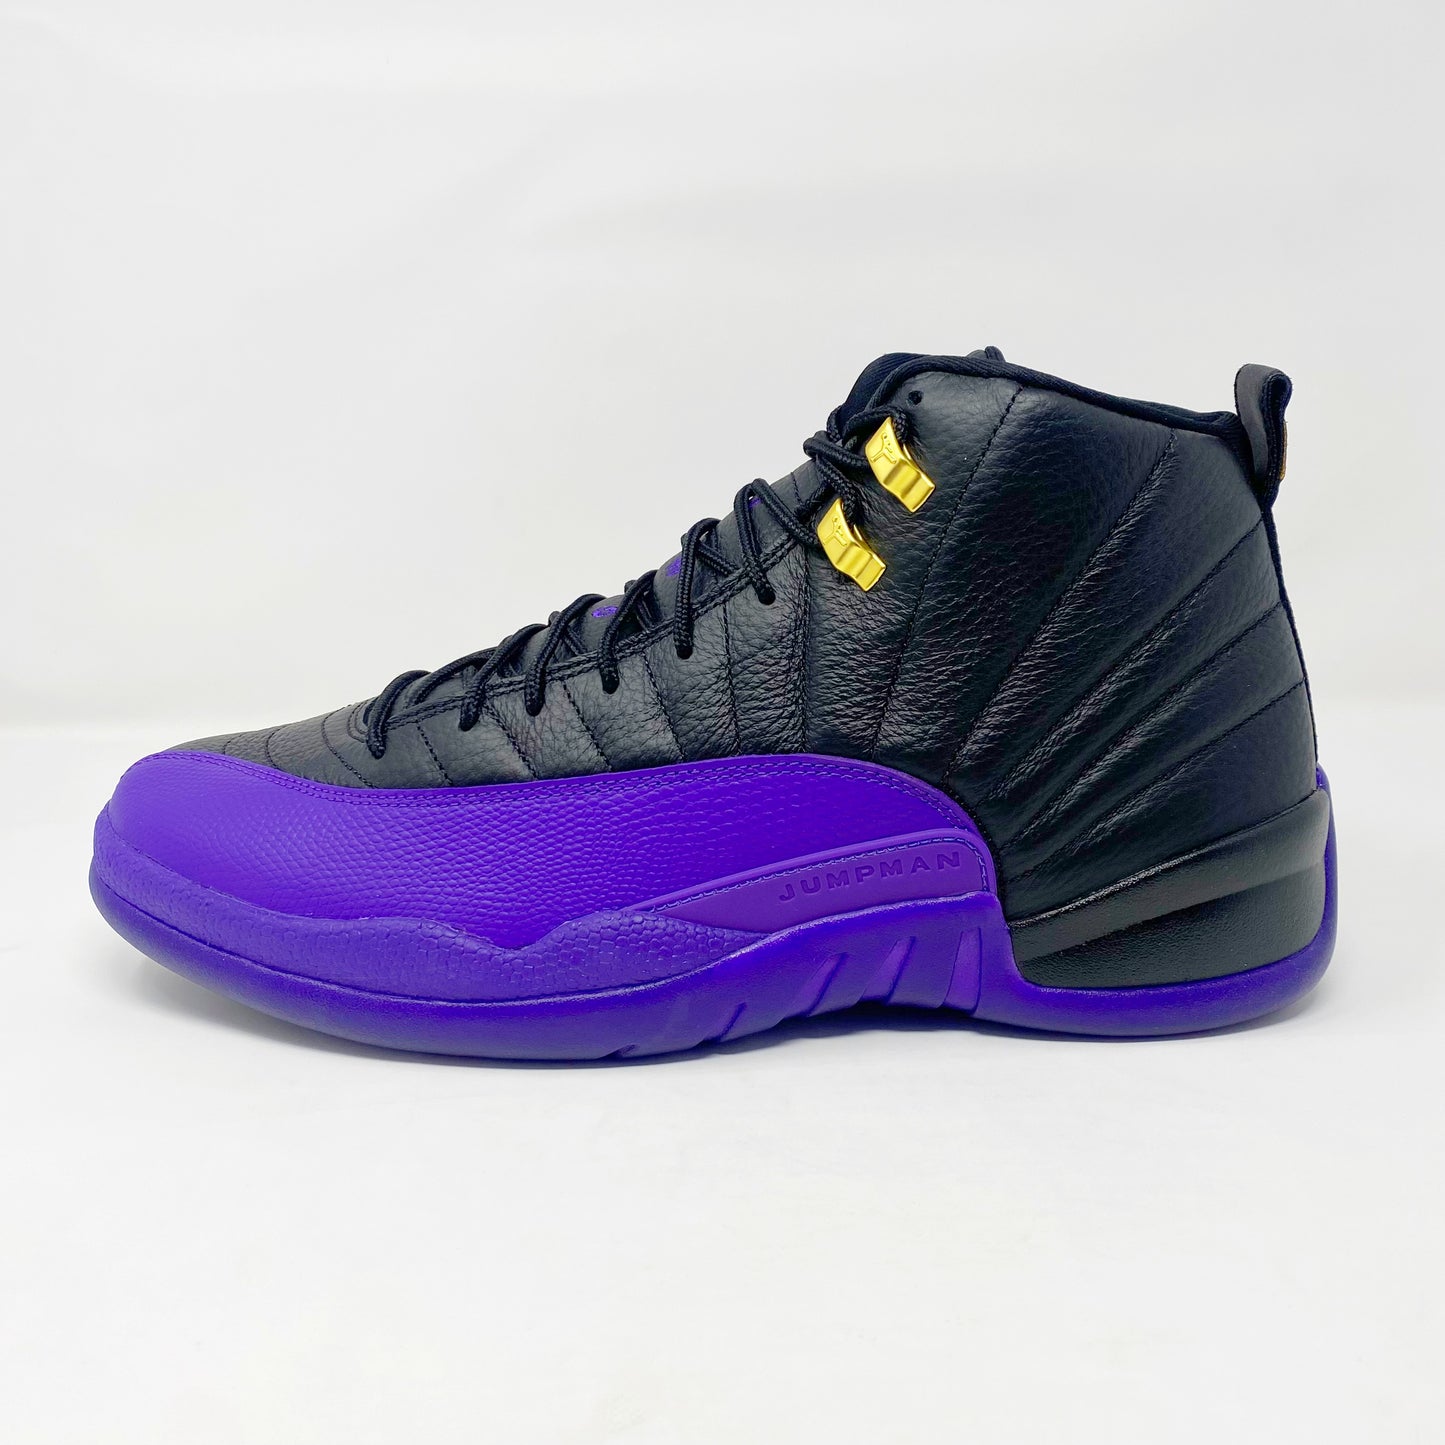 Jordan Retro 12 “Field Purple”